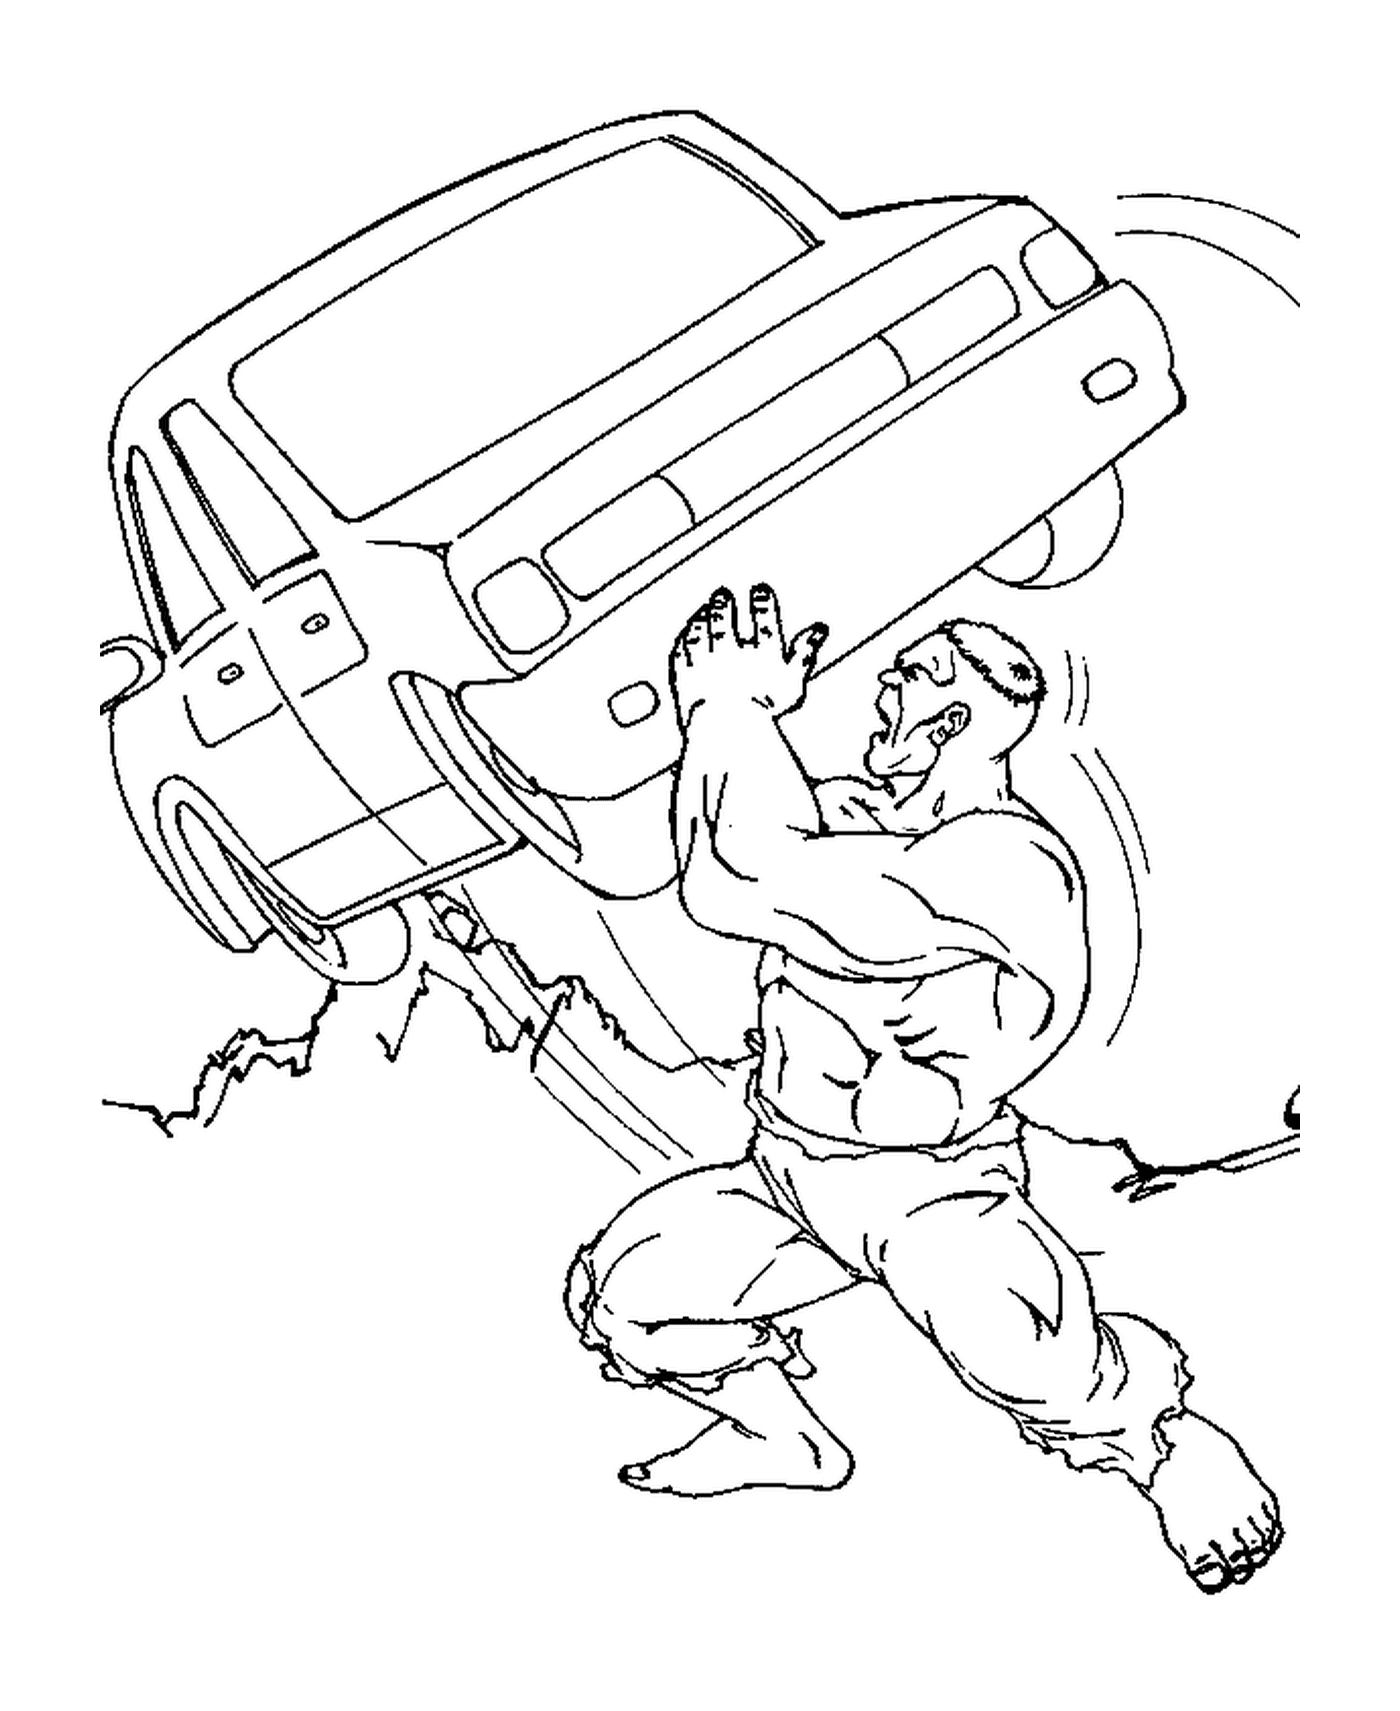  Hulk lifting a car 